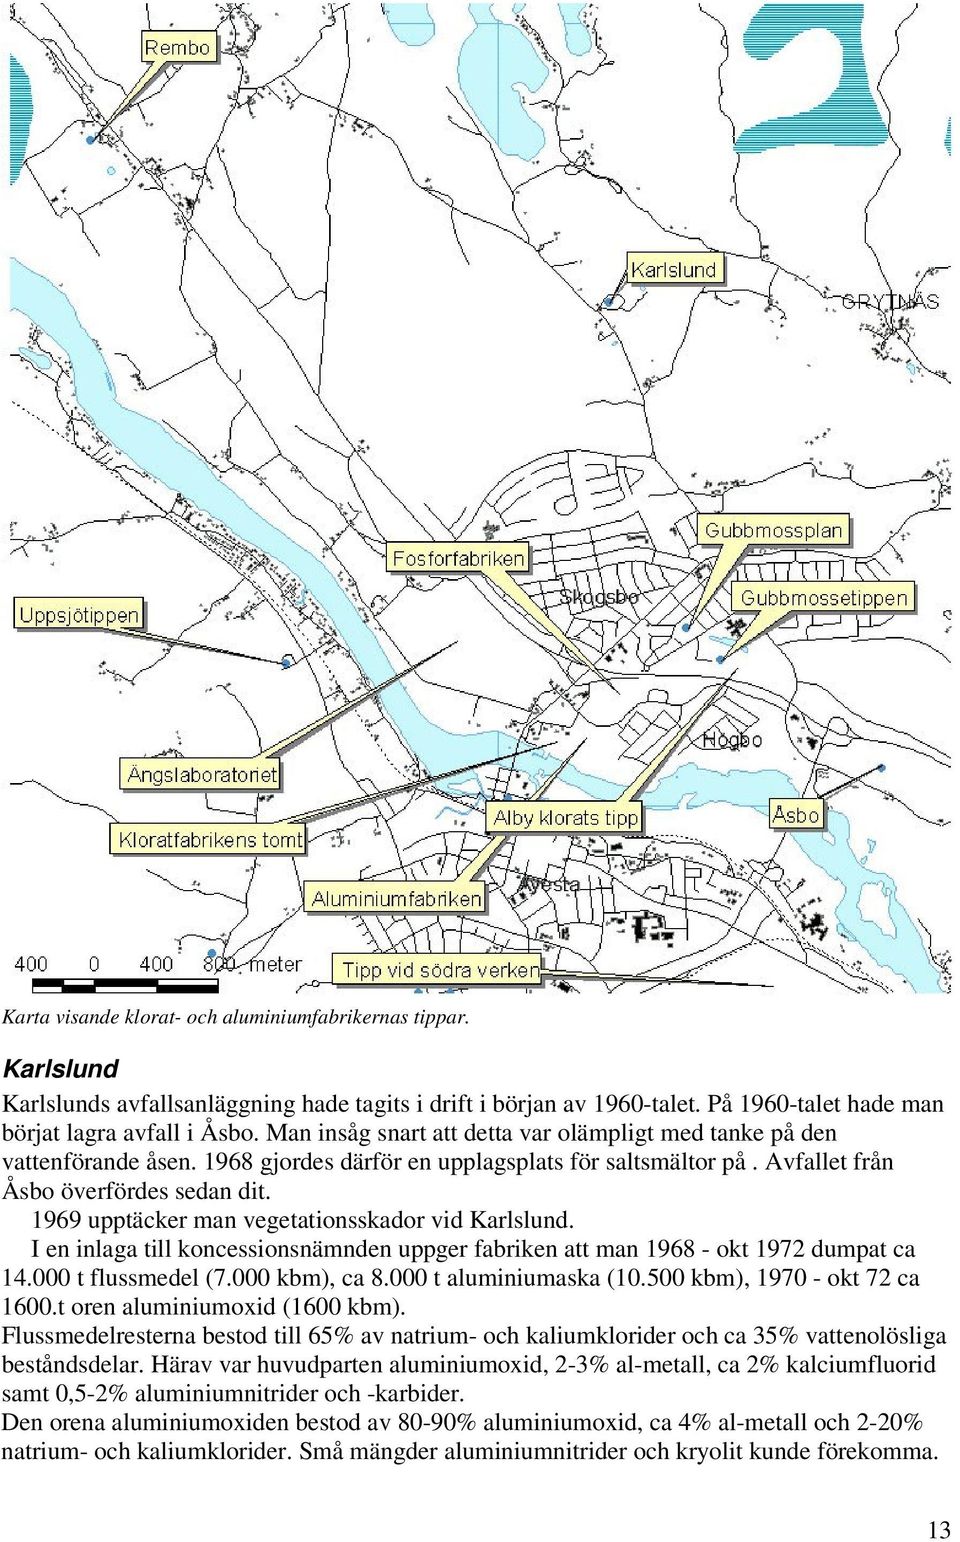 1969 upptäcker man vegetationsskador vid Karlslund. I en inlaga till koncessionsnämnden uppger fabriken att man 1968 - okt 1972 dumpat ca 14.000 t flussmedel (7.000 kbm), ca 8.000 t aluminiumaska (10.